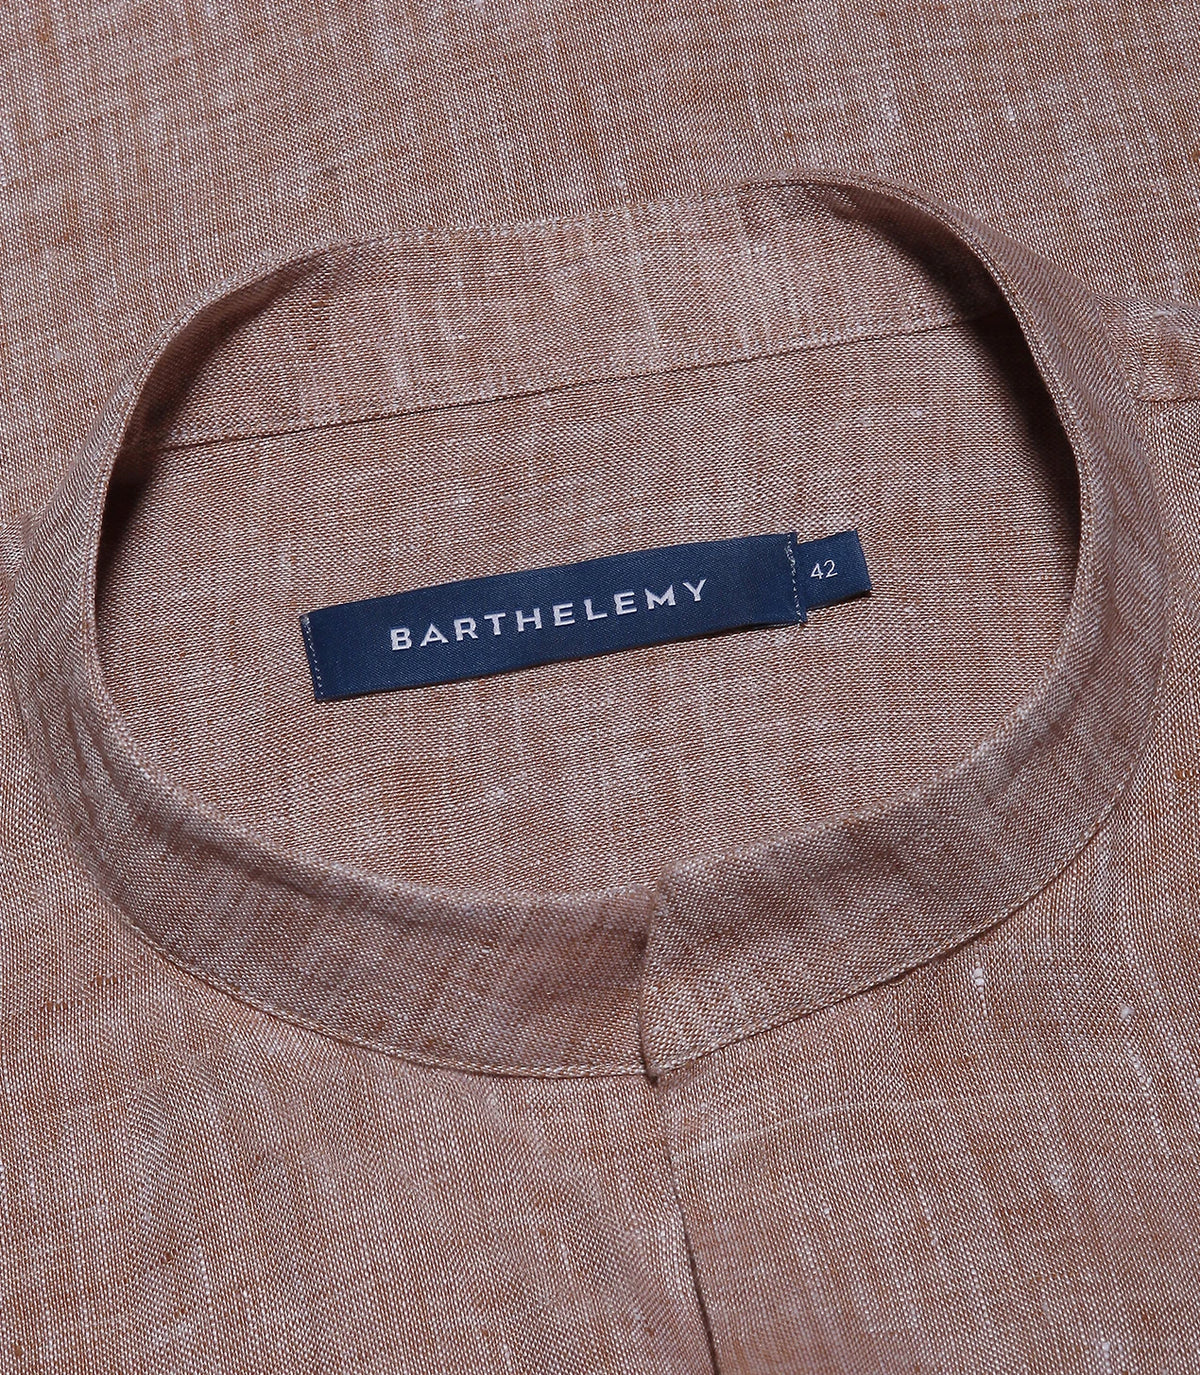 Mirage Linen Shirt Camel - Barthelemy